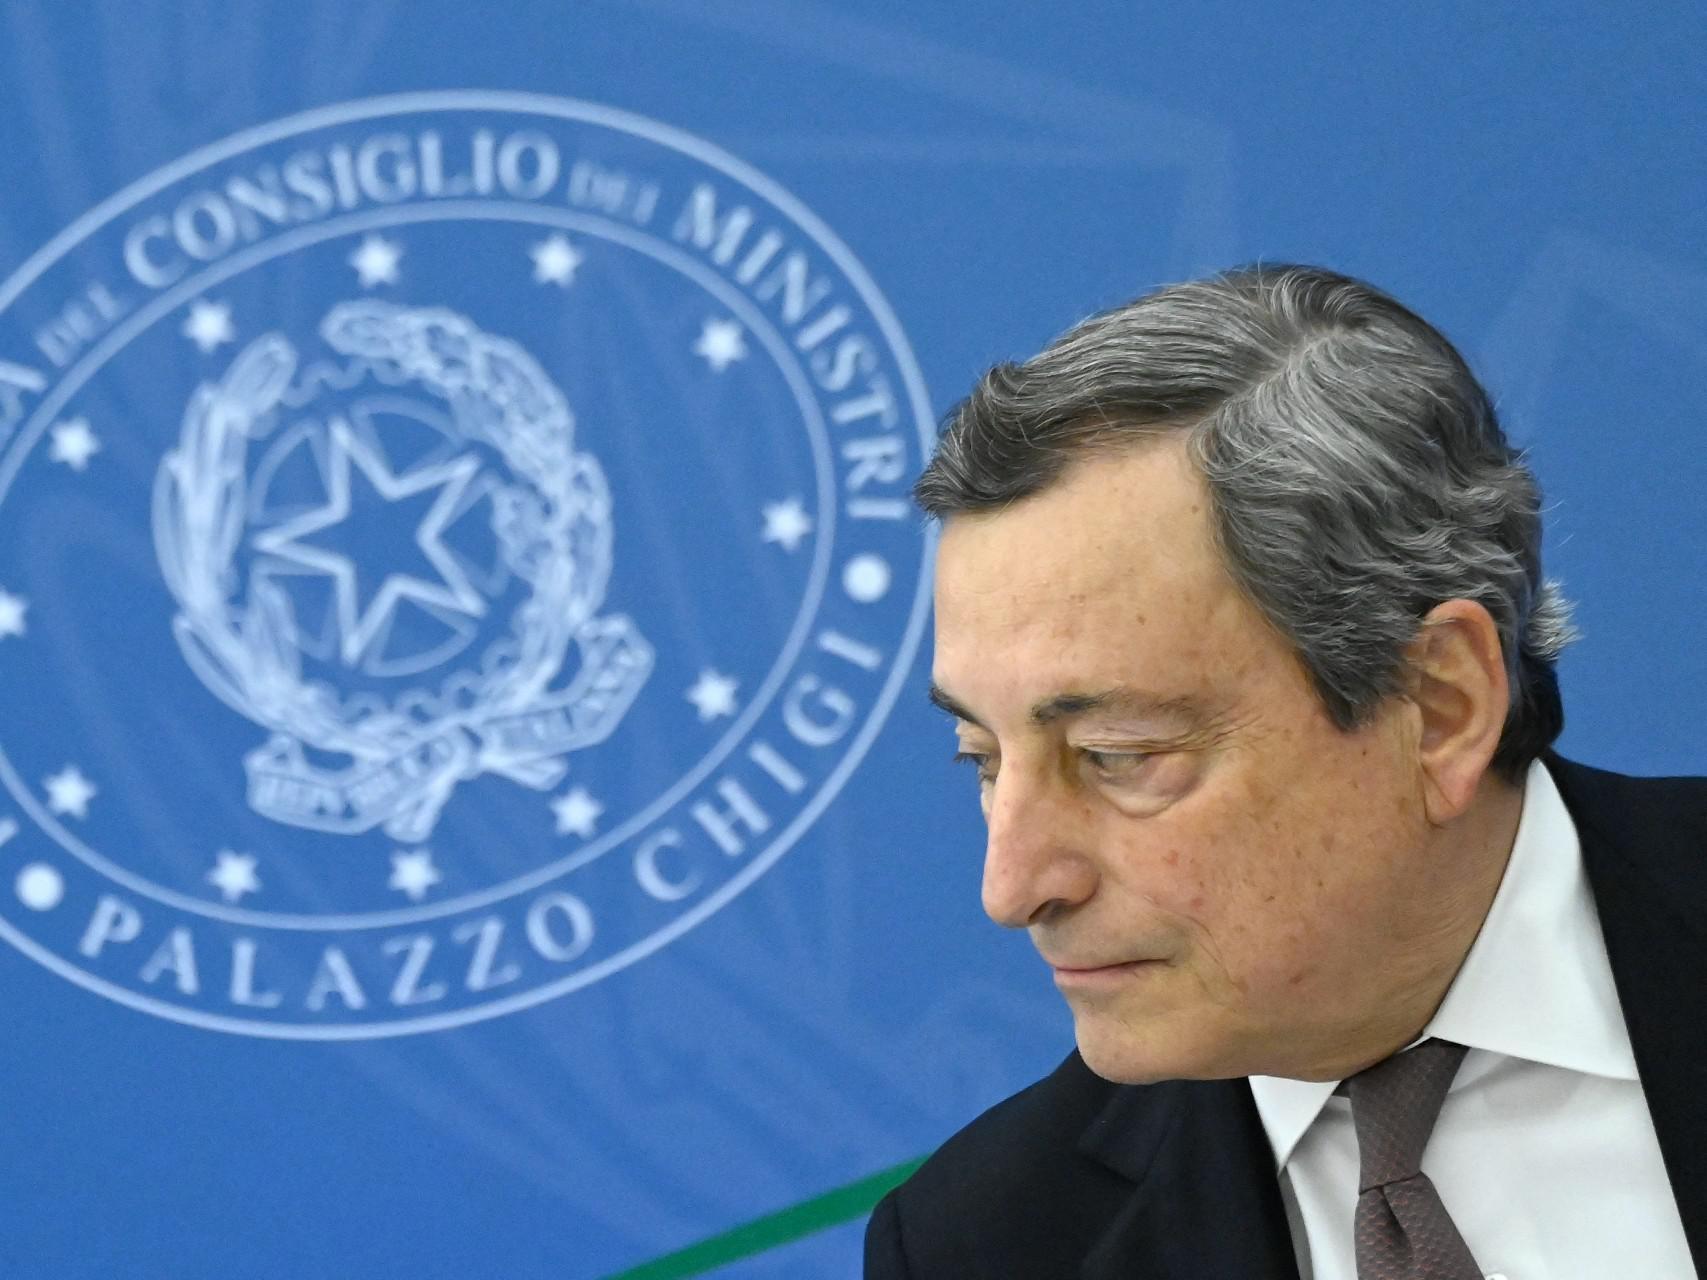 Quirinale, il silenzio di Draghi: "Su Colle non rispondo, governo avanti bene"